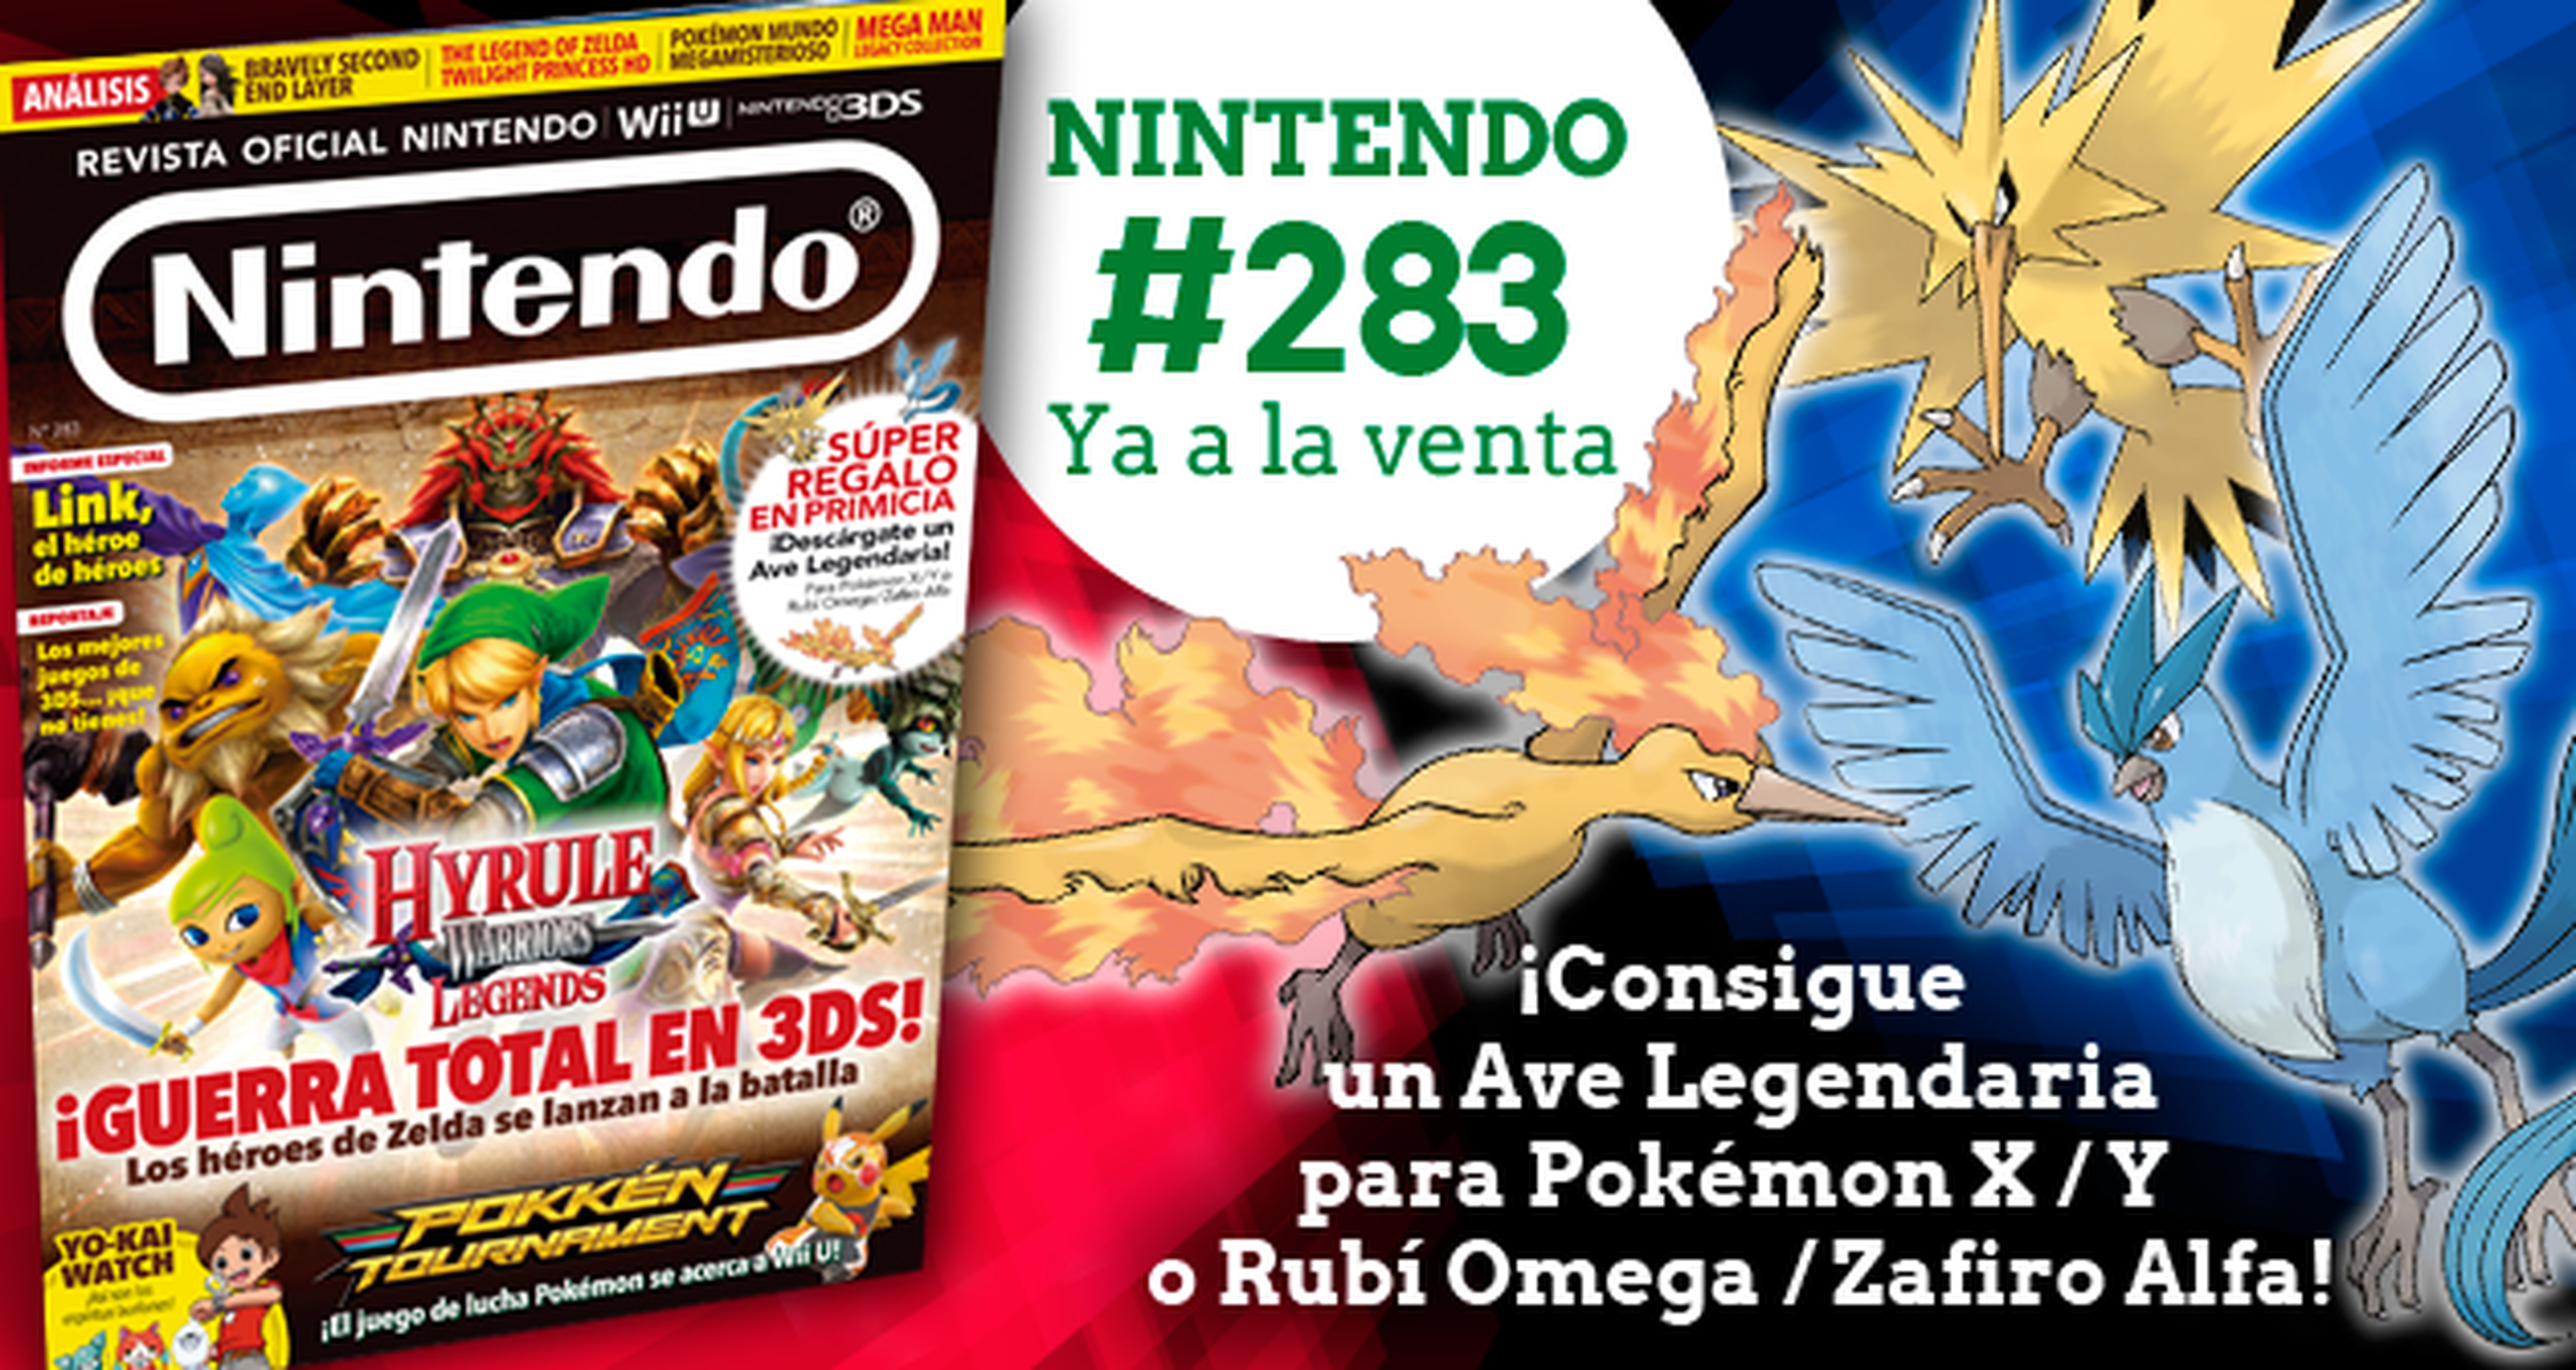 ¡Consigue un Ave Legendaria para tu juego Pokémon con la Revista Nintendo! ¡Ya a la venta!